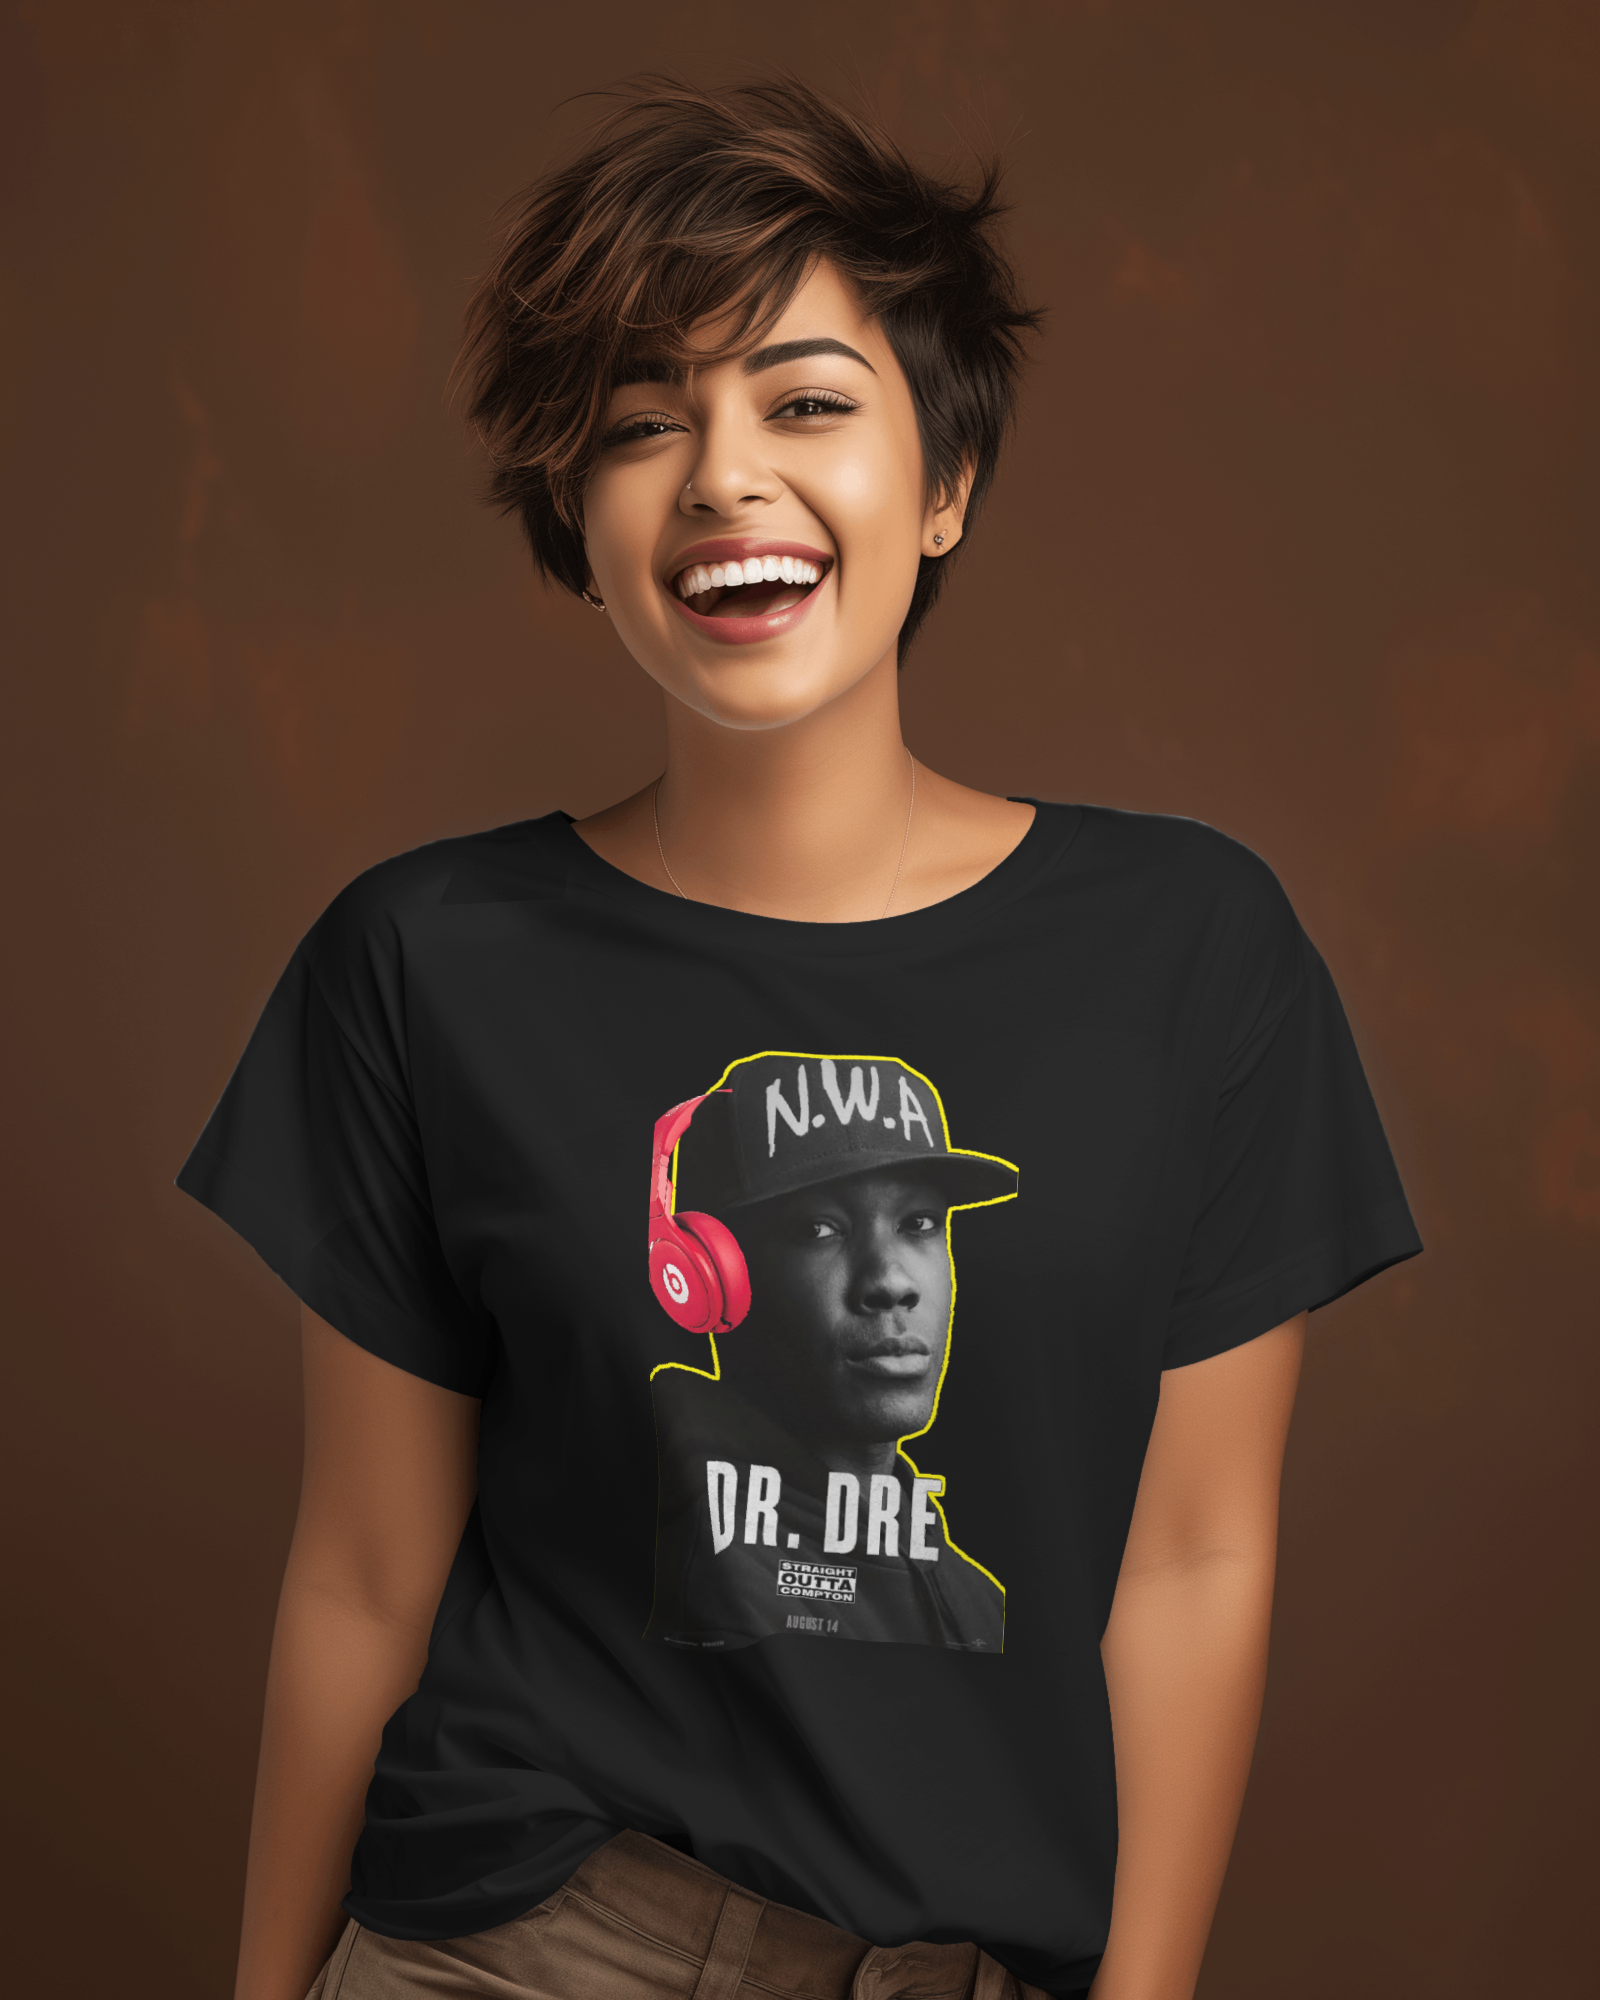 #drdre Printed Tshirt